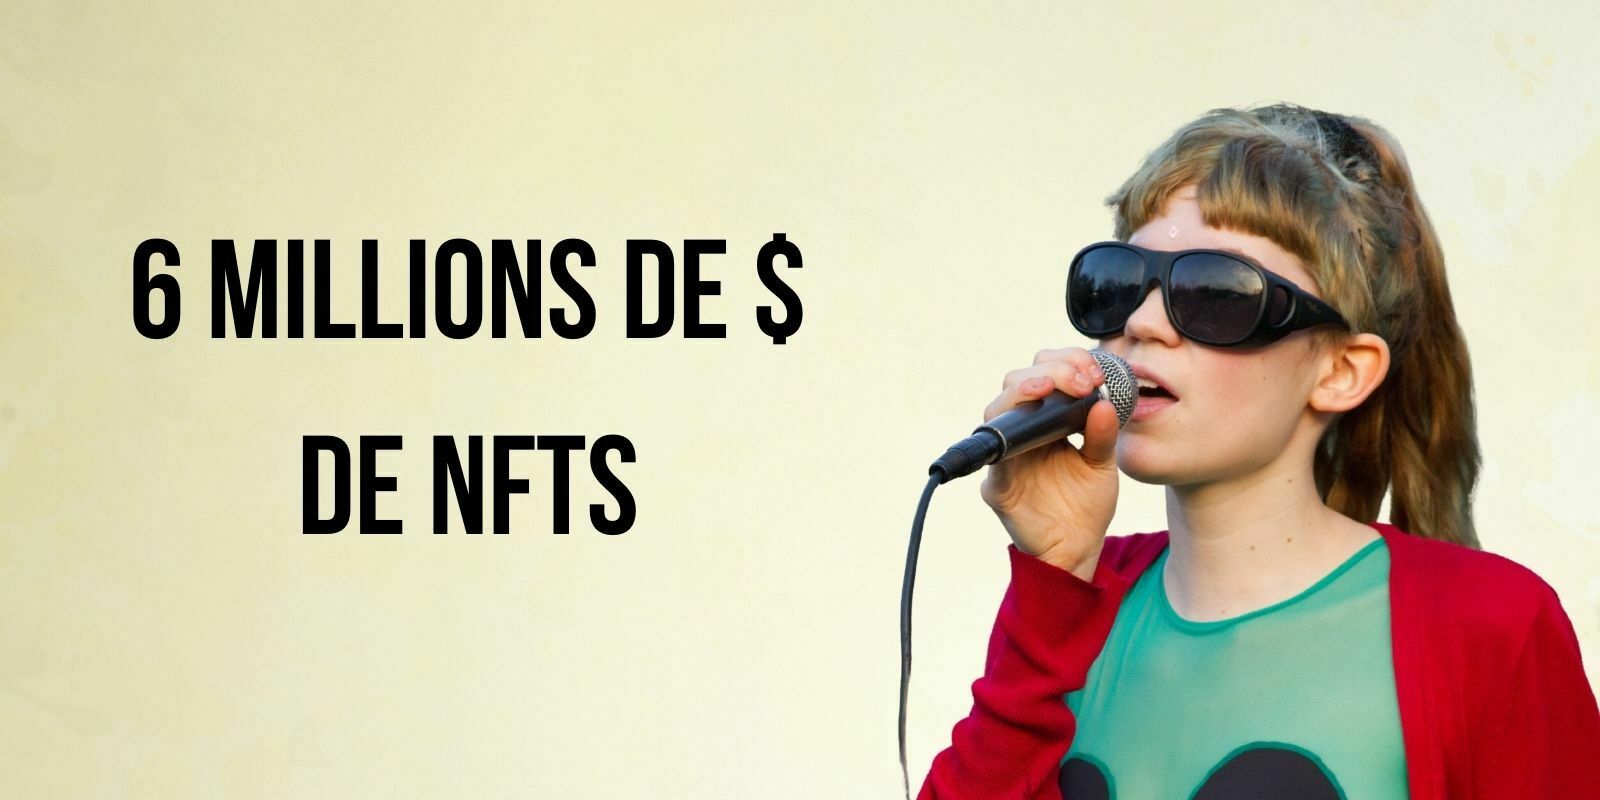 L'artiste Grimes vend une collection de NFT pour 6 millions de dollars